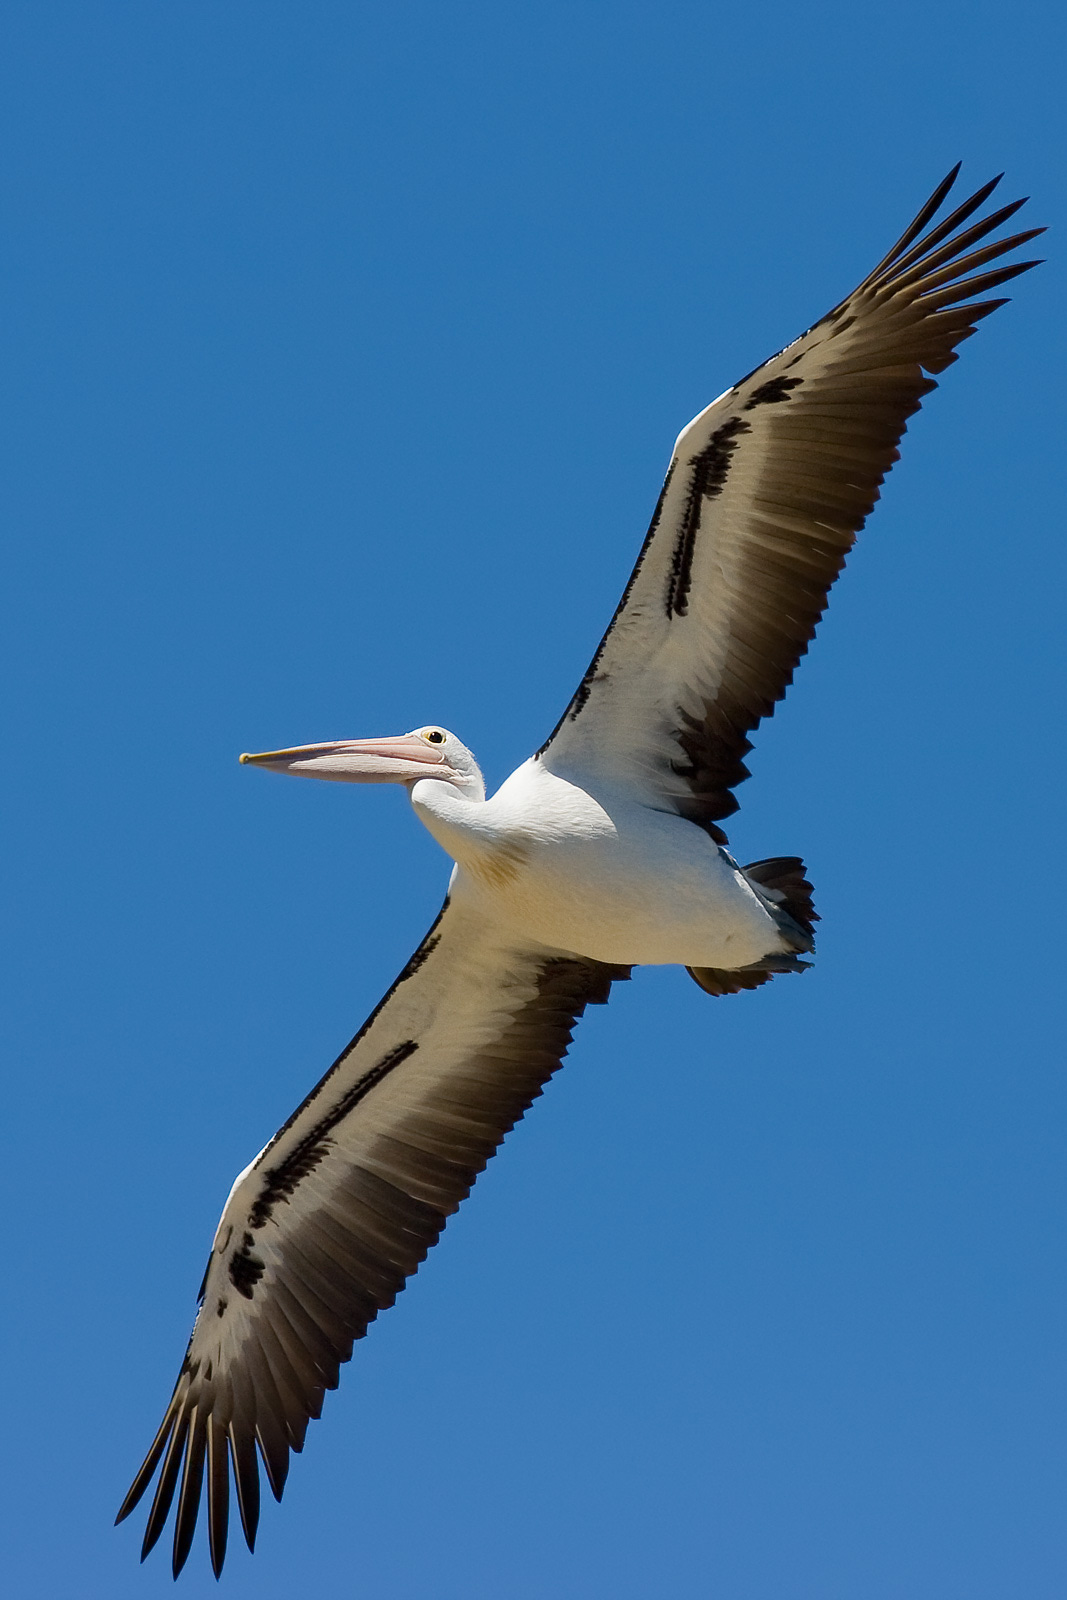 File:Australian pelican in flight.jpg - Wikipedia